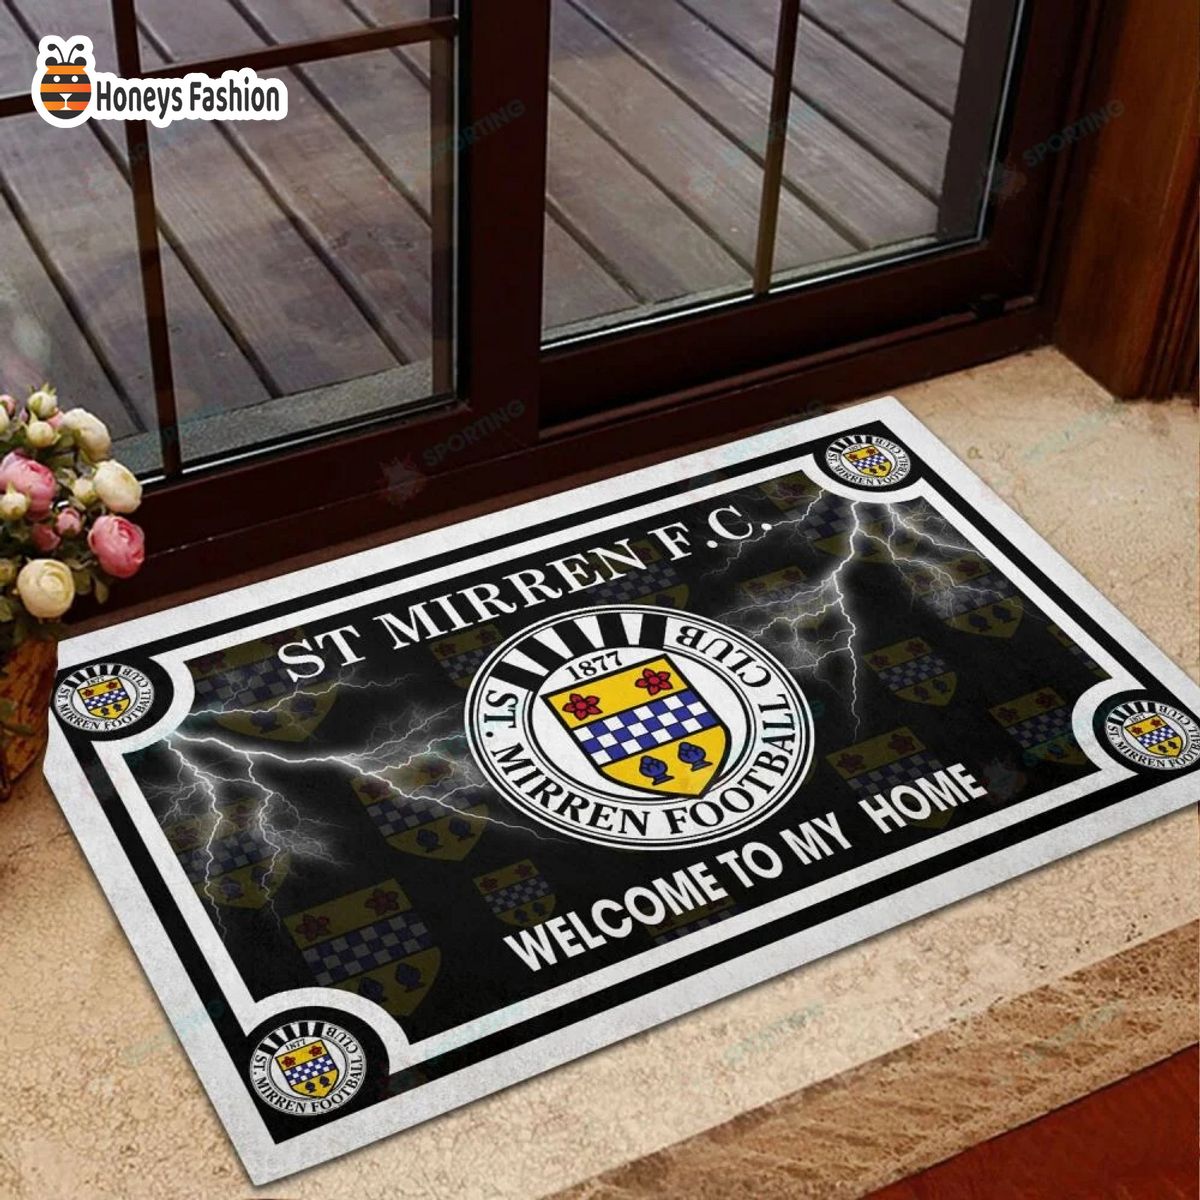 St Mirren F.C. welcome to my home doormat